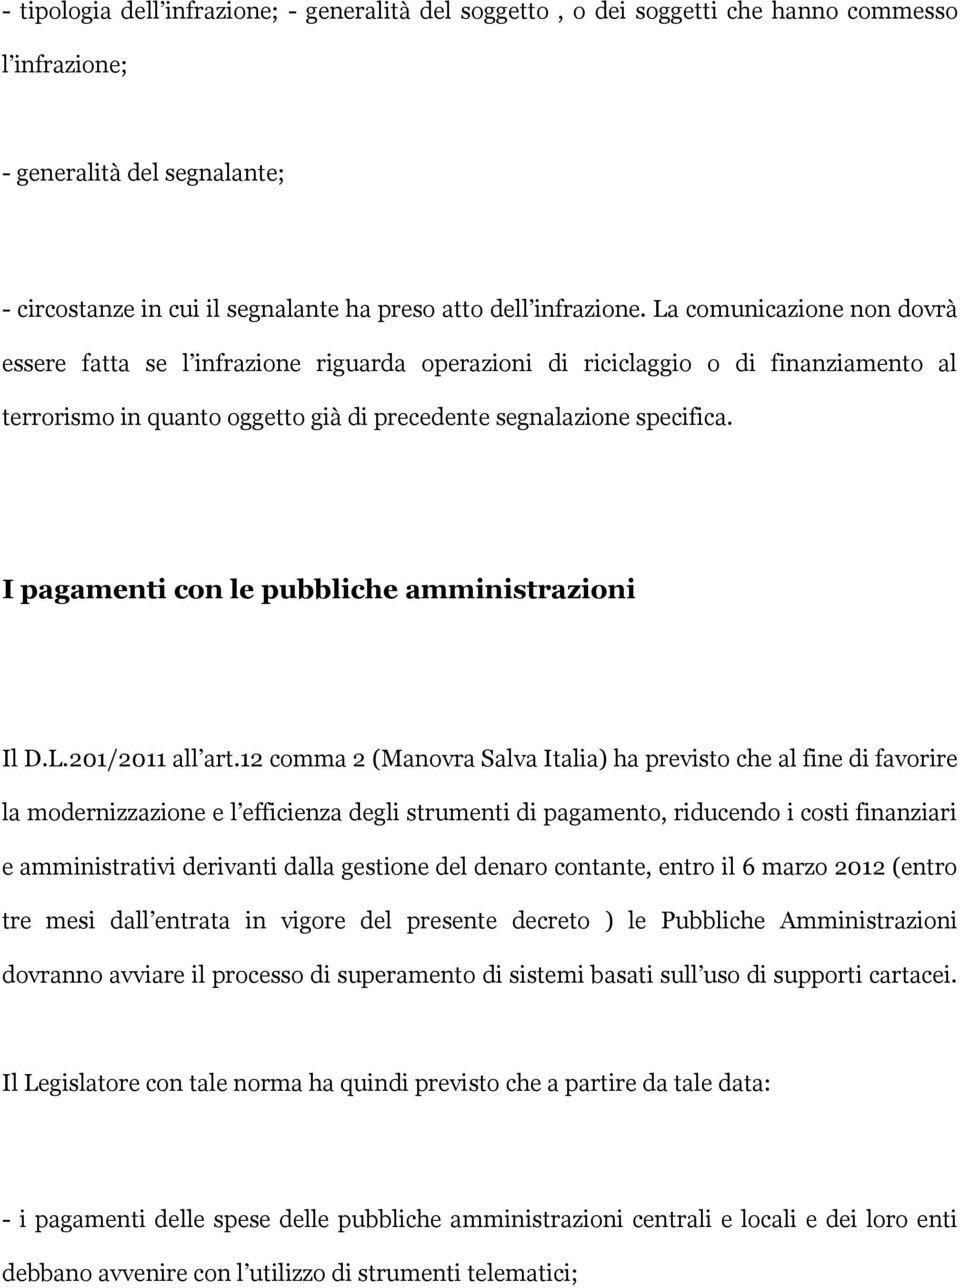 I pagamenti con le pubbliche amministrazioni Il D.L.201/2011 all art.